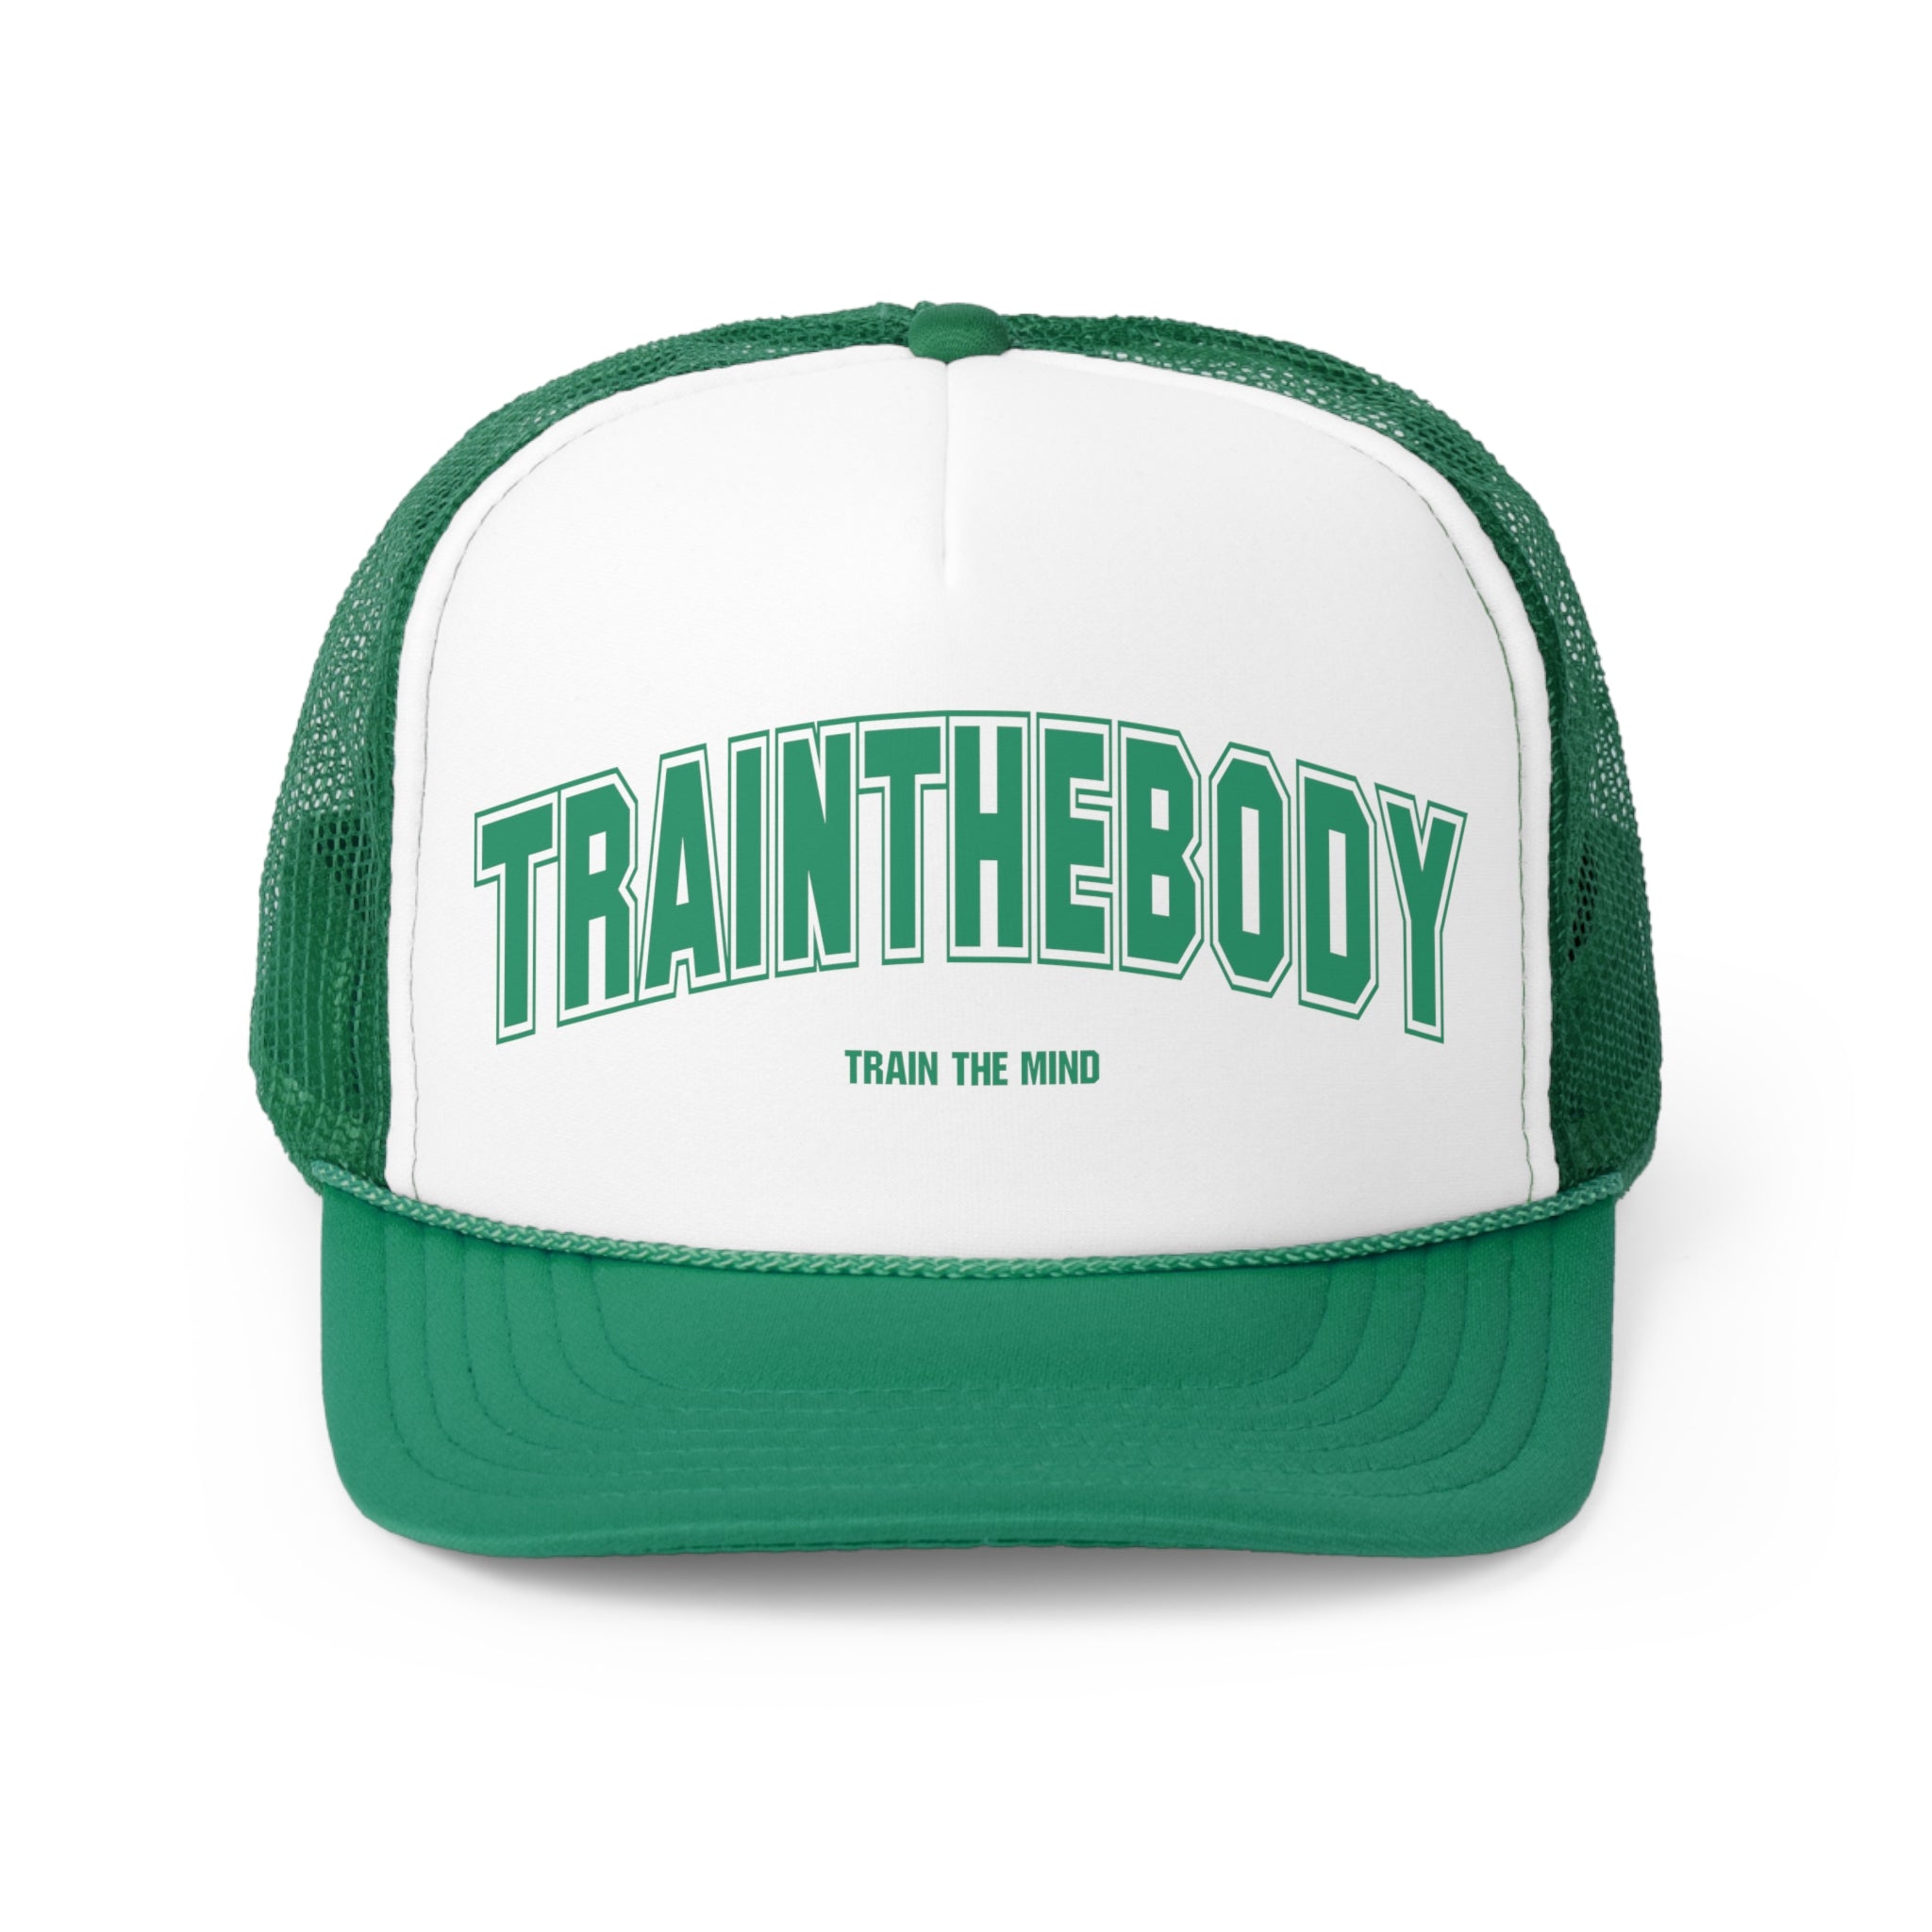 TTBTTM  Foam Trucker Hats